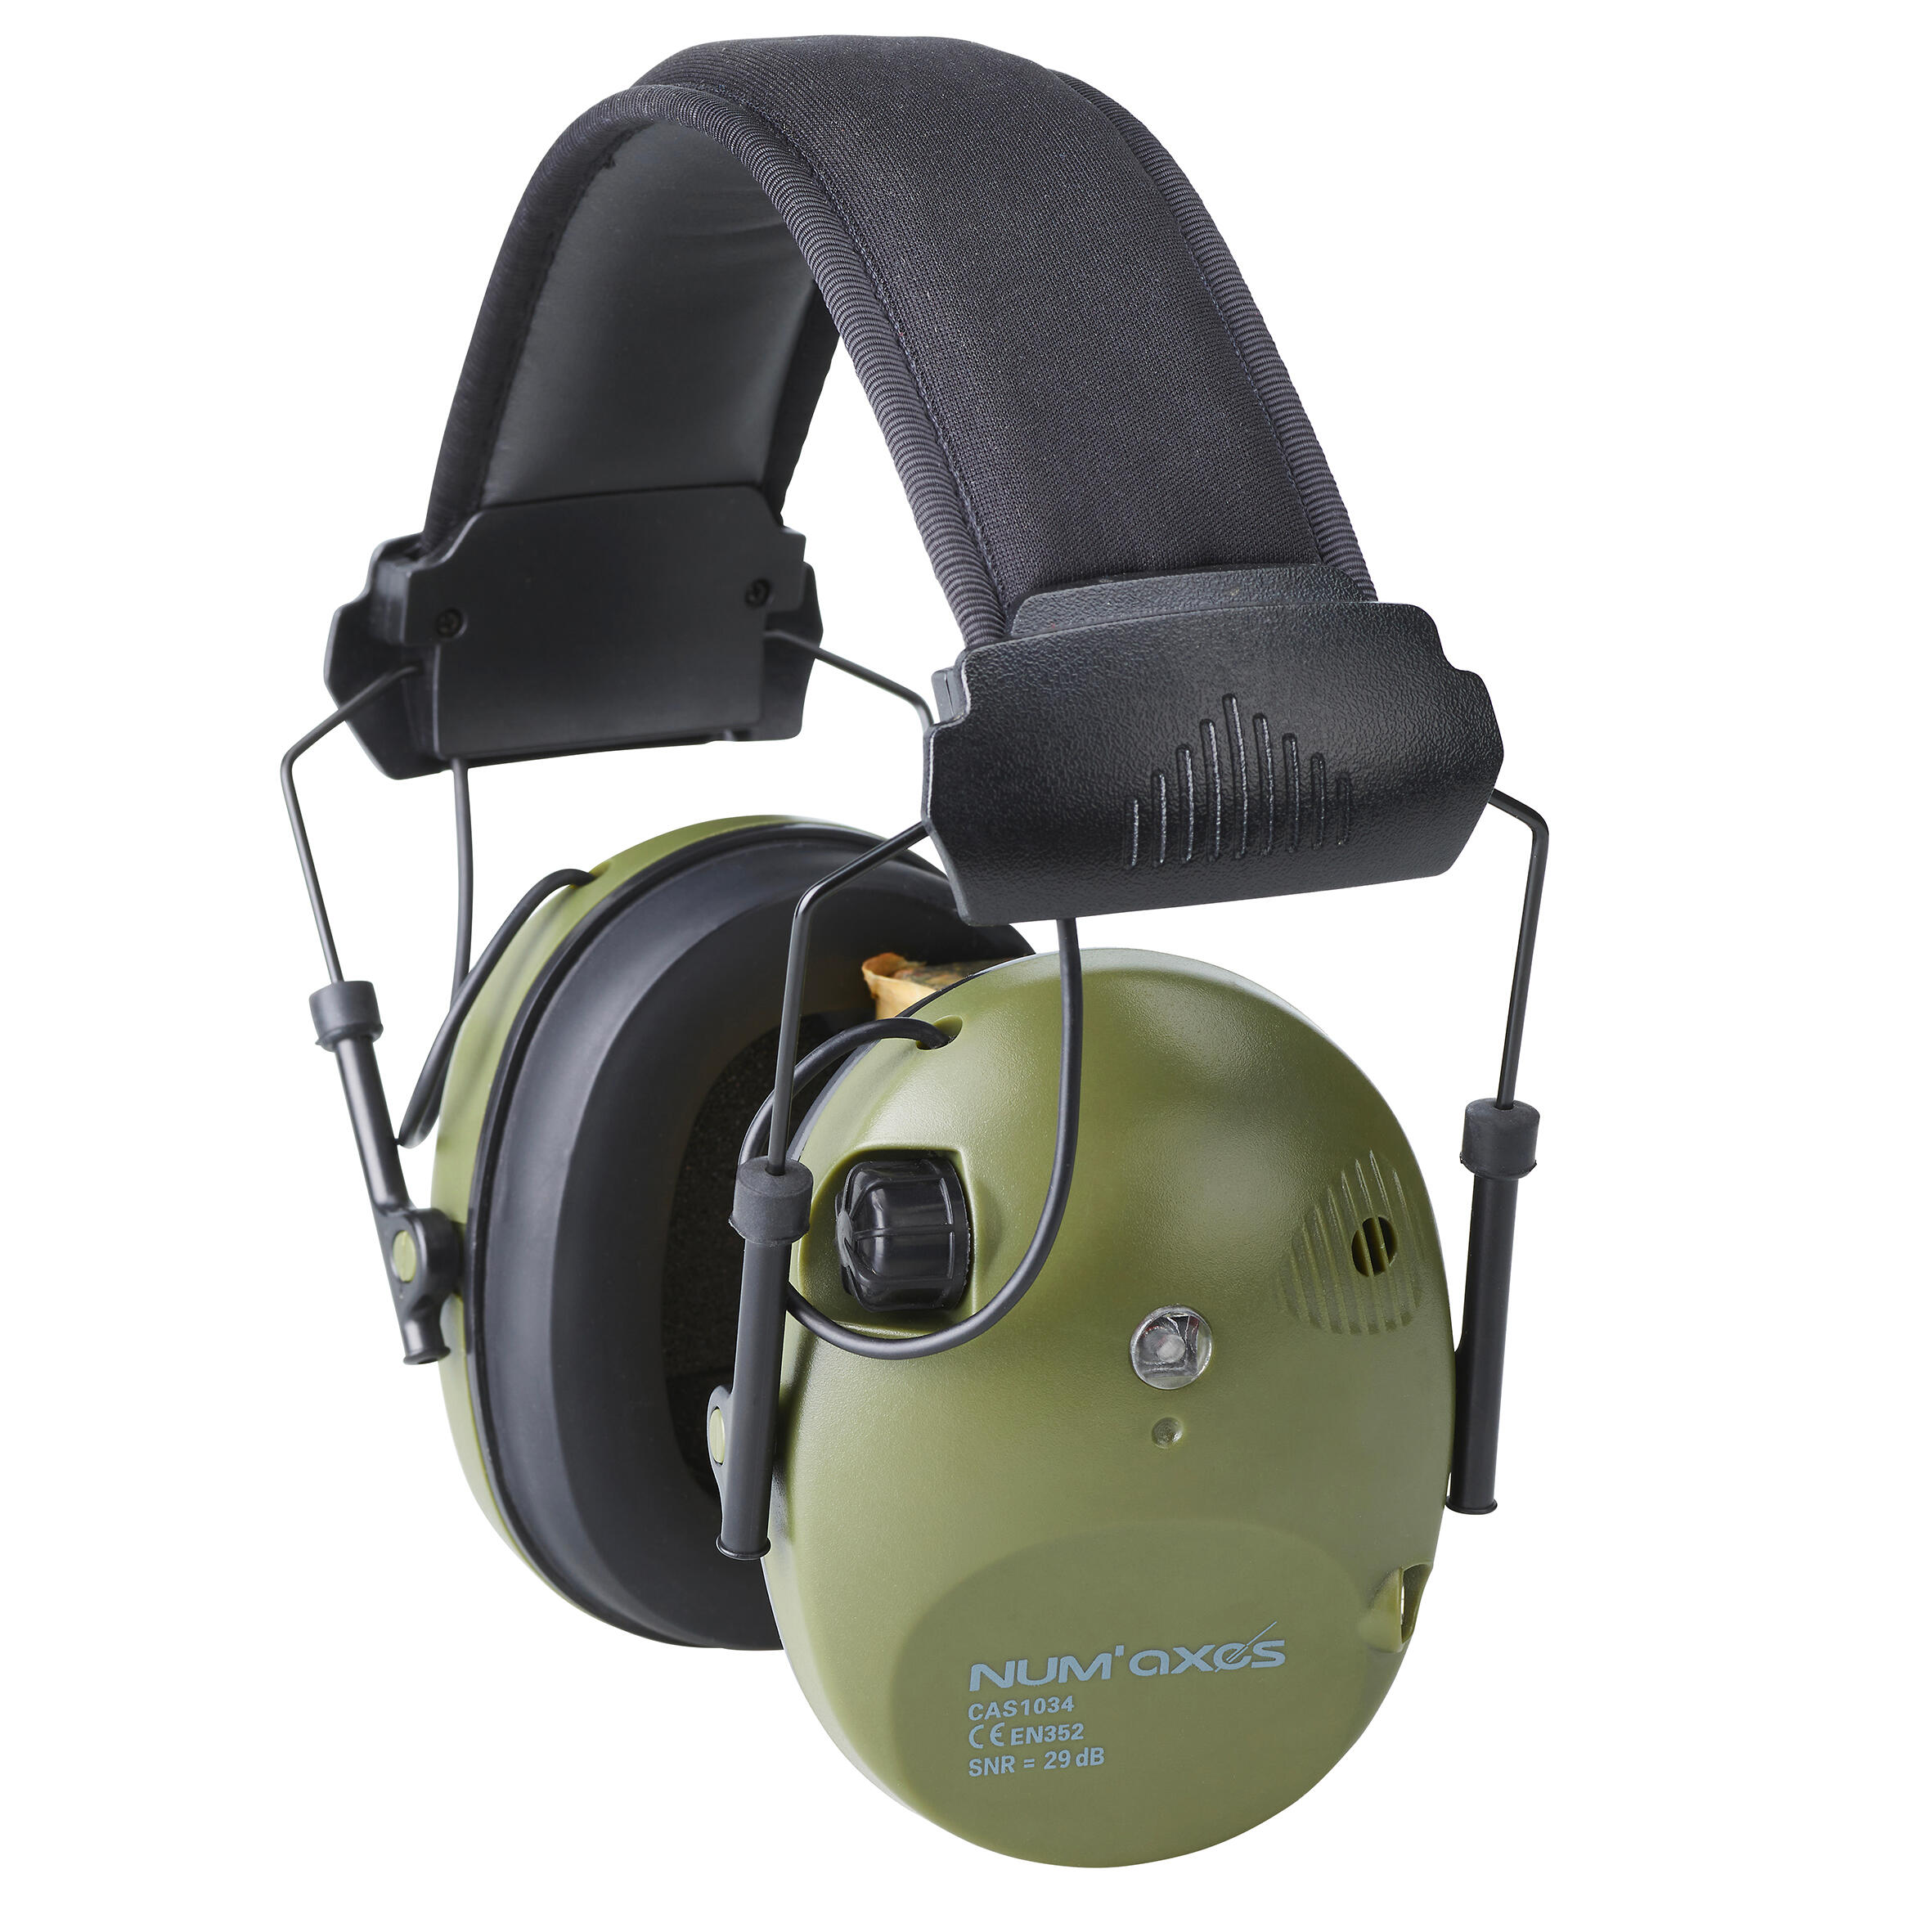 Cască de protecție auditivă electronică anti-zgomot CAS1034 Num Axes NUM’AXES decathlon.ro